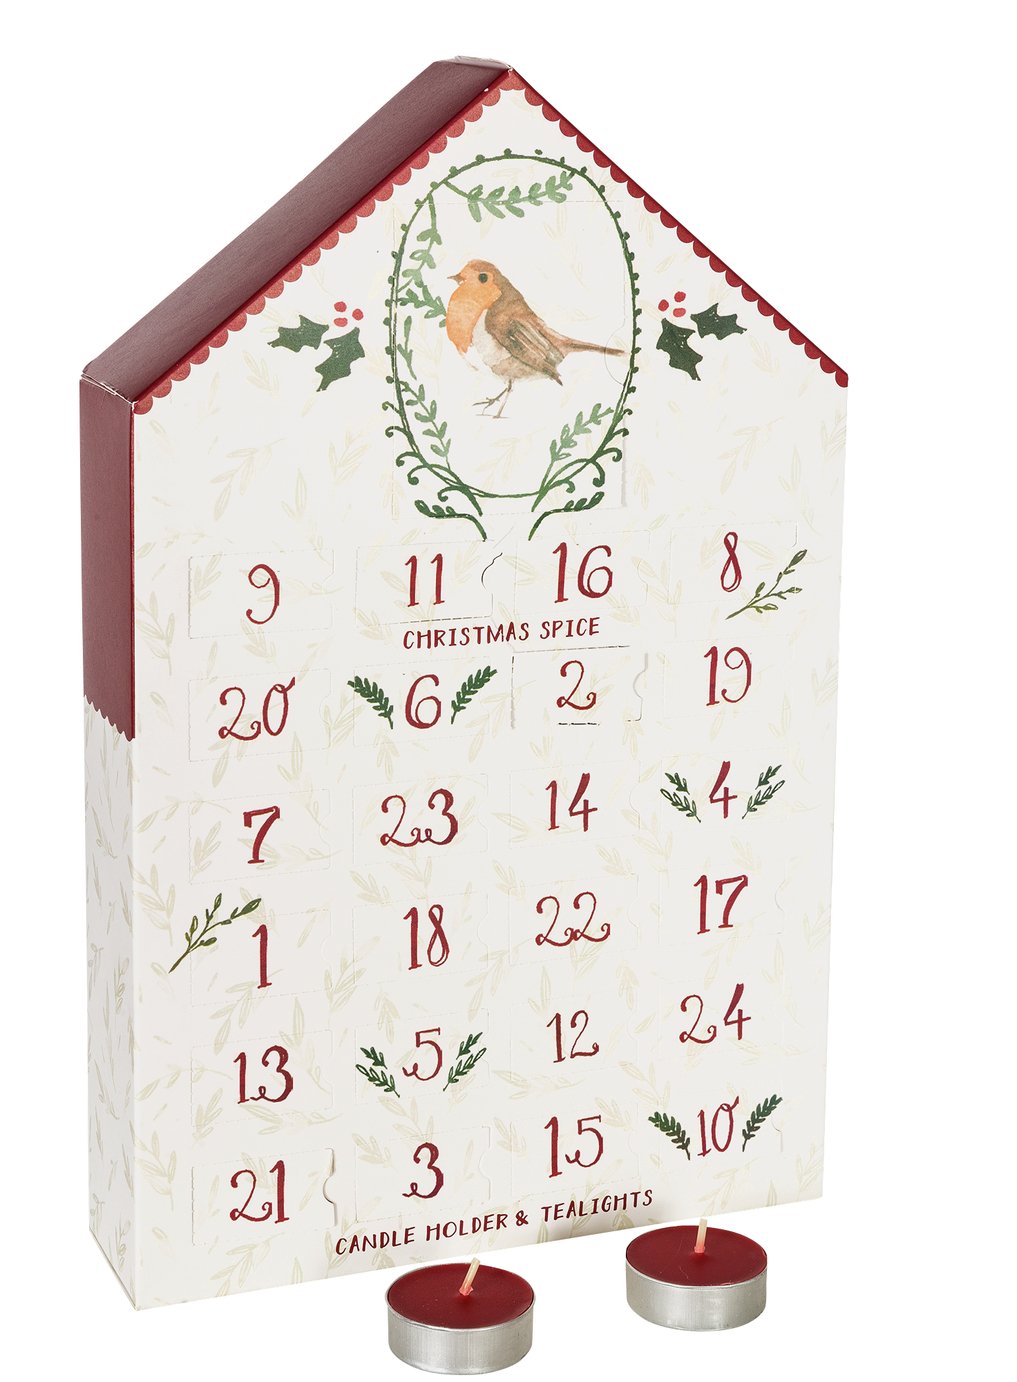 Sainsbury #39 s Home Christmas Spice Advent Calendar Reviews